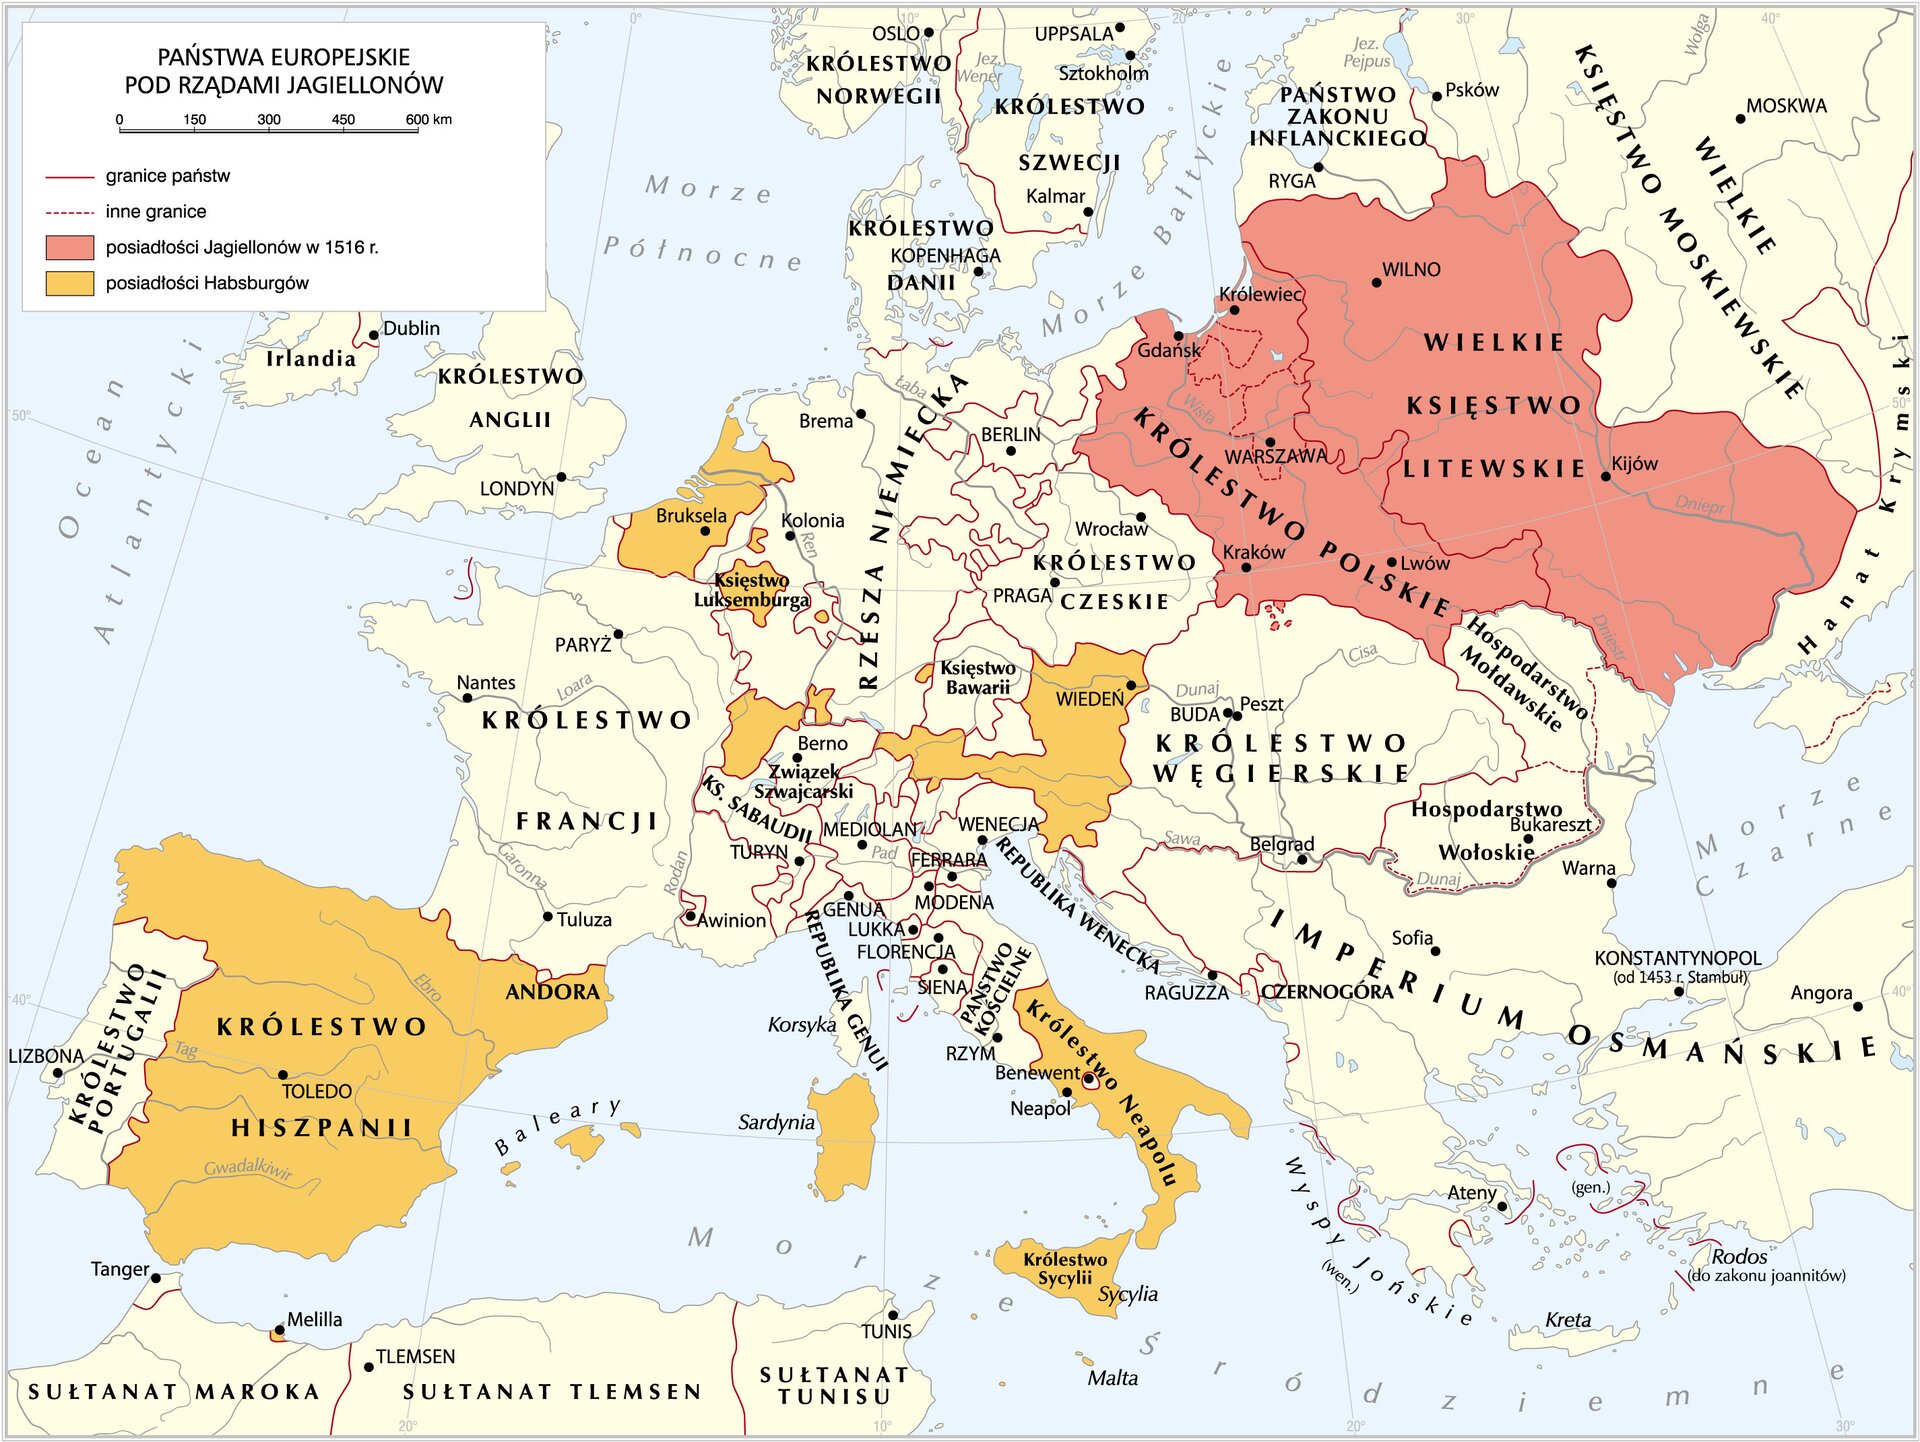 Mapa państwa we władaniu Jagiellonów w 1490 r. oraz państwa we władaniu Habsburgów. Zawiera informacje, które państwa były w posiadaniu obydwu dynastii.